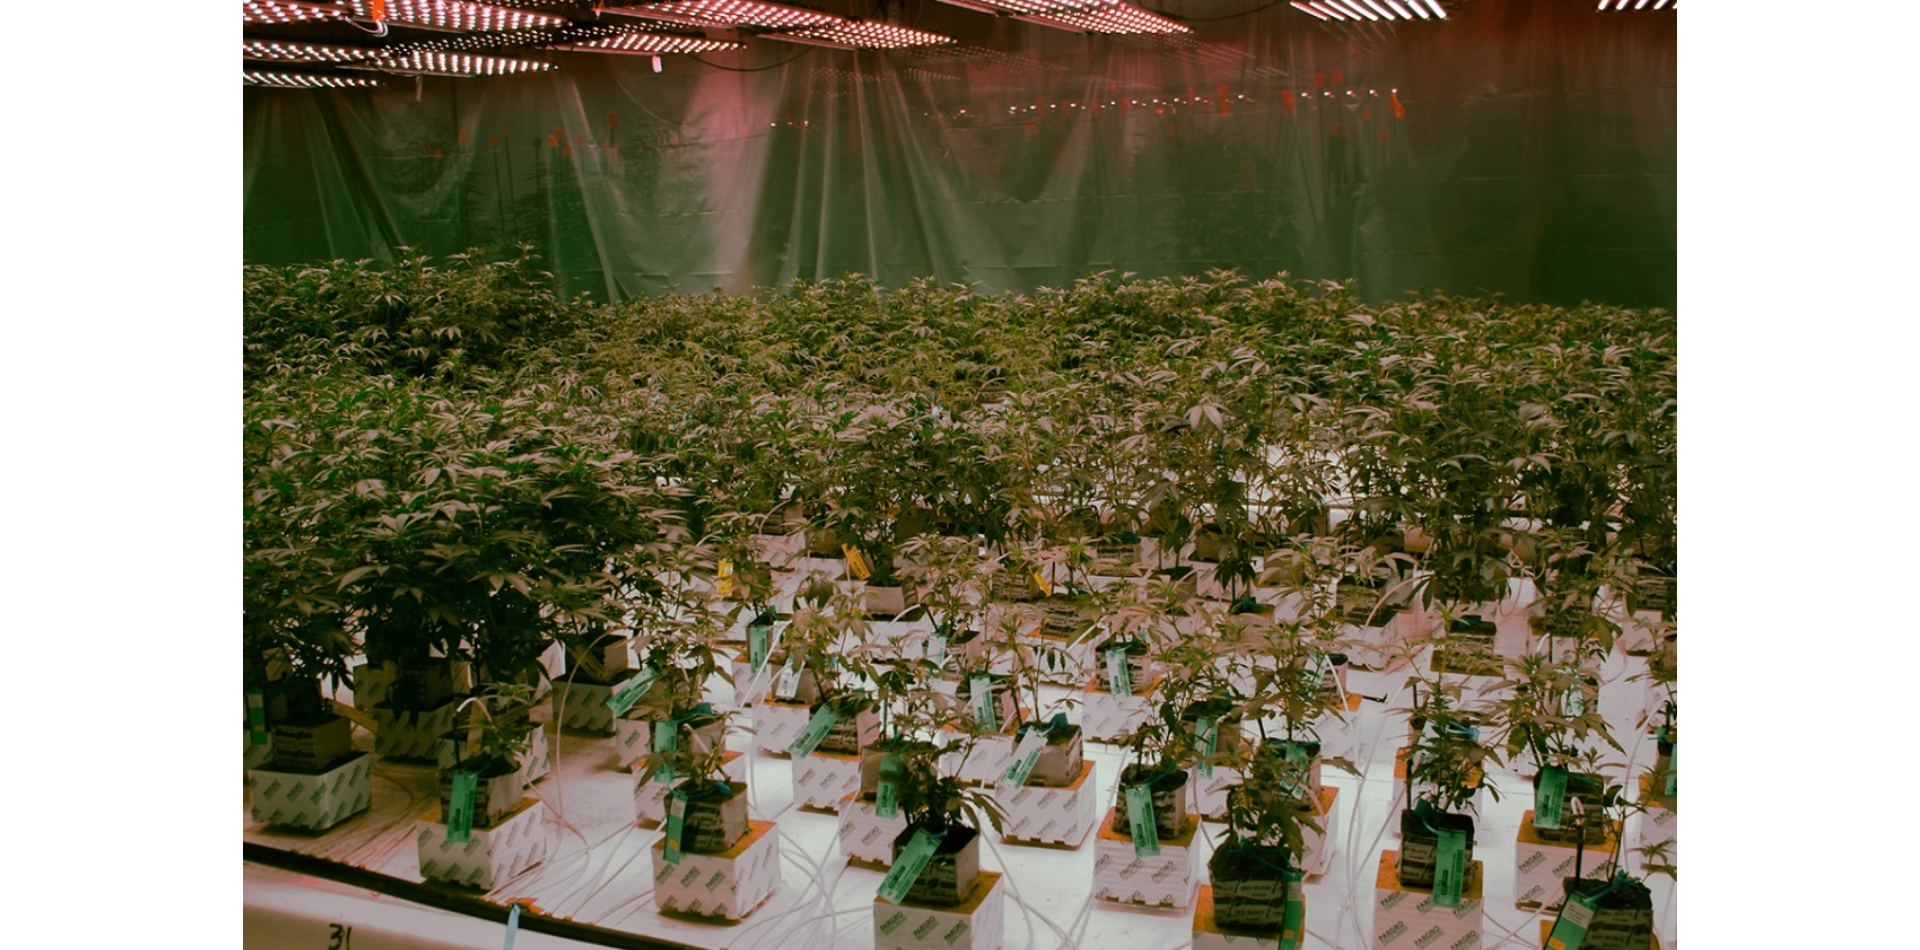 Die USA sind führend bei Cannabis-Innovationen, geben aber den Weltmarkt an Kanada ab